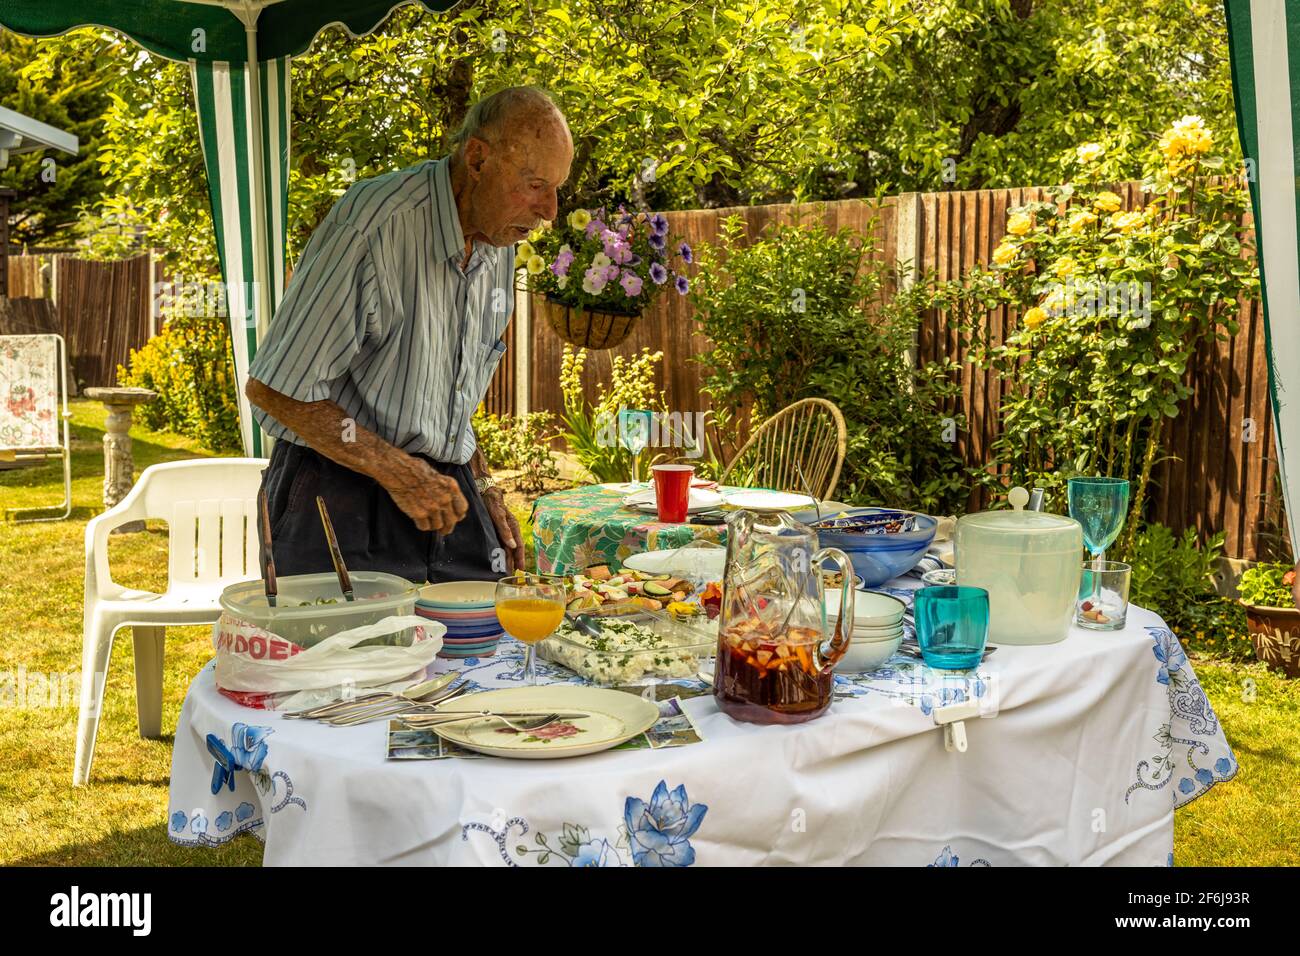 Familie Sommer authentischer Garten Mittagessen Picknick Zusammen mit Opa, der sich selbst mit köstlichen hausgemachten gekochten Gerichten serviert, London England Stockfoto